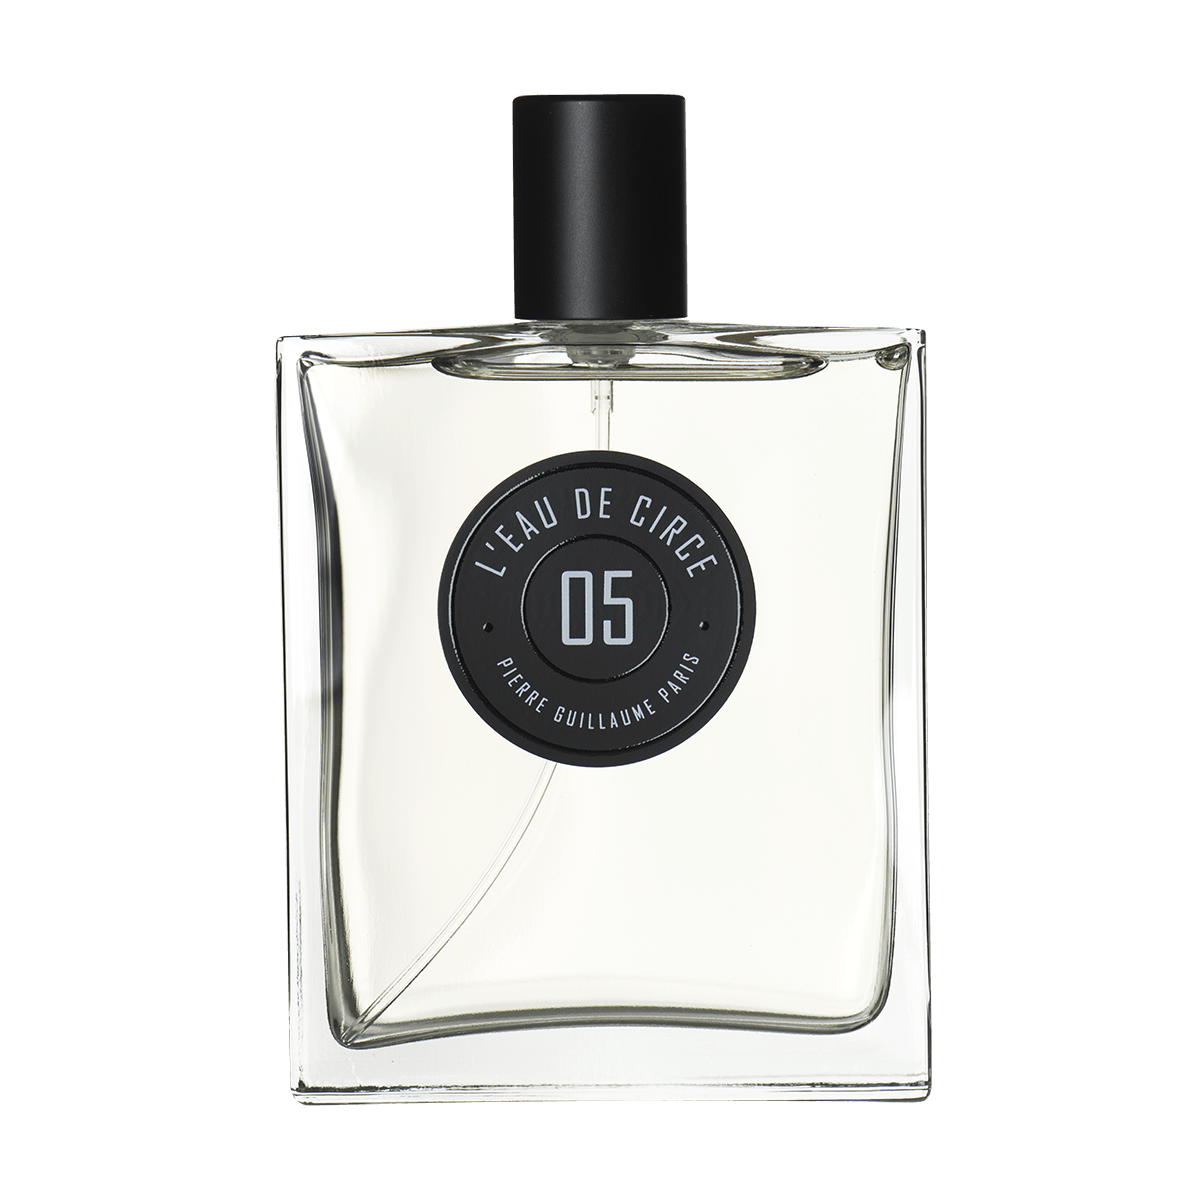 Pierre Guillaume Paris - 05 L'eau de circe 100 ml | Perfume Lounge